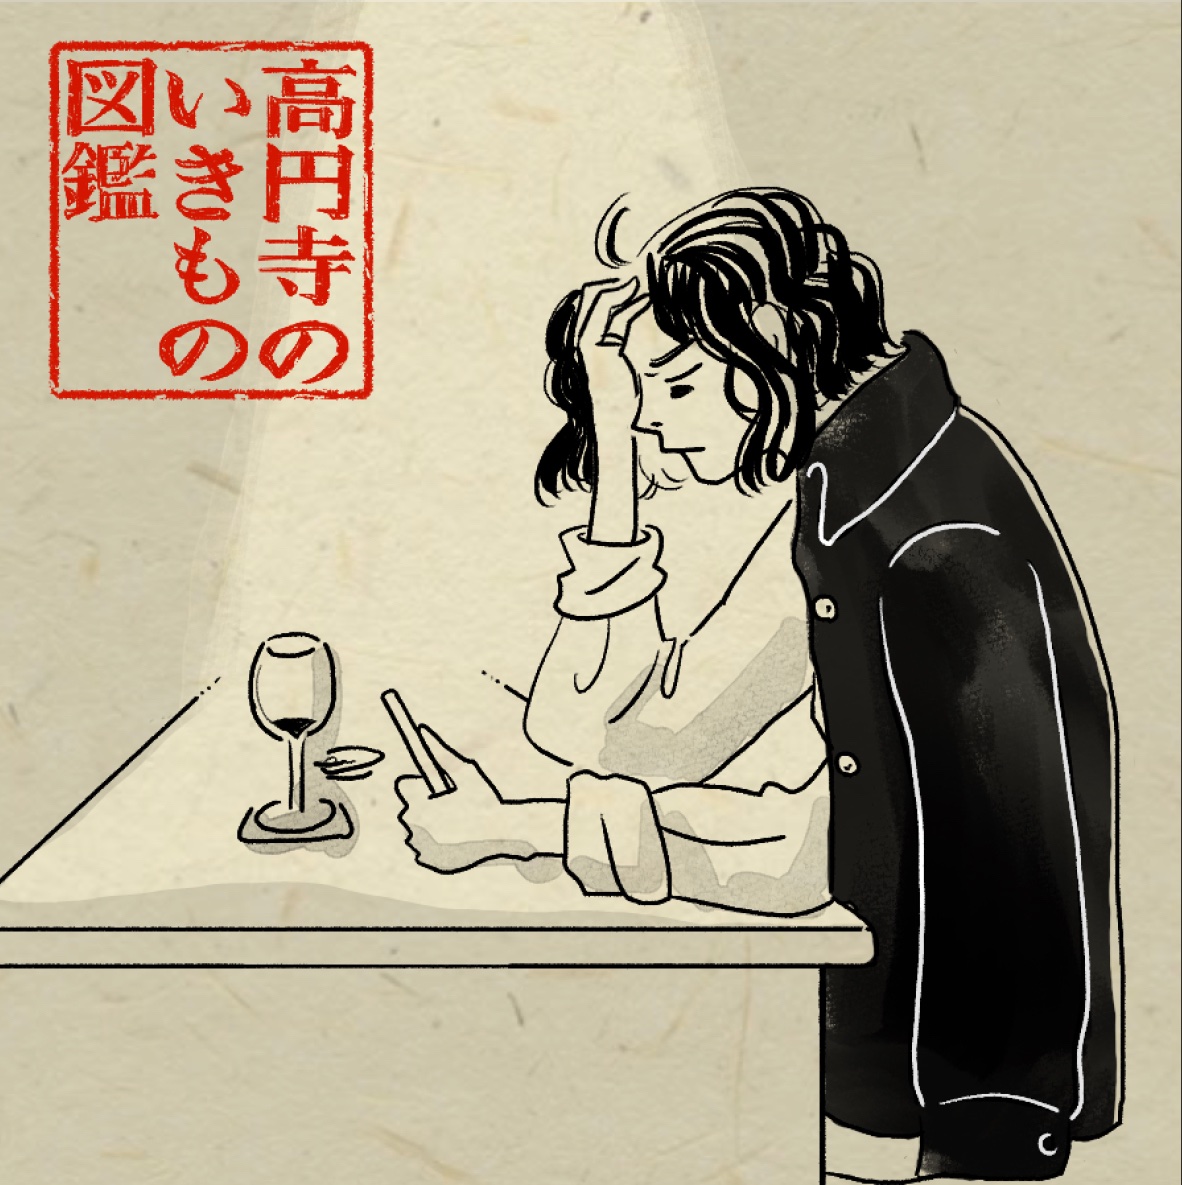 #高円寺いきもの図鑑 [32/100]

酒飲んでても絶対に仕事の連絡を返す人 